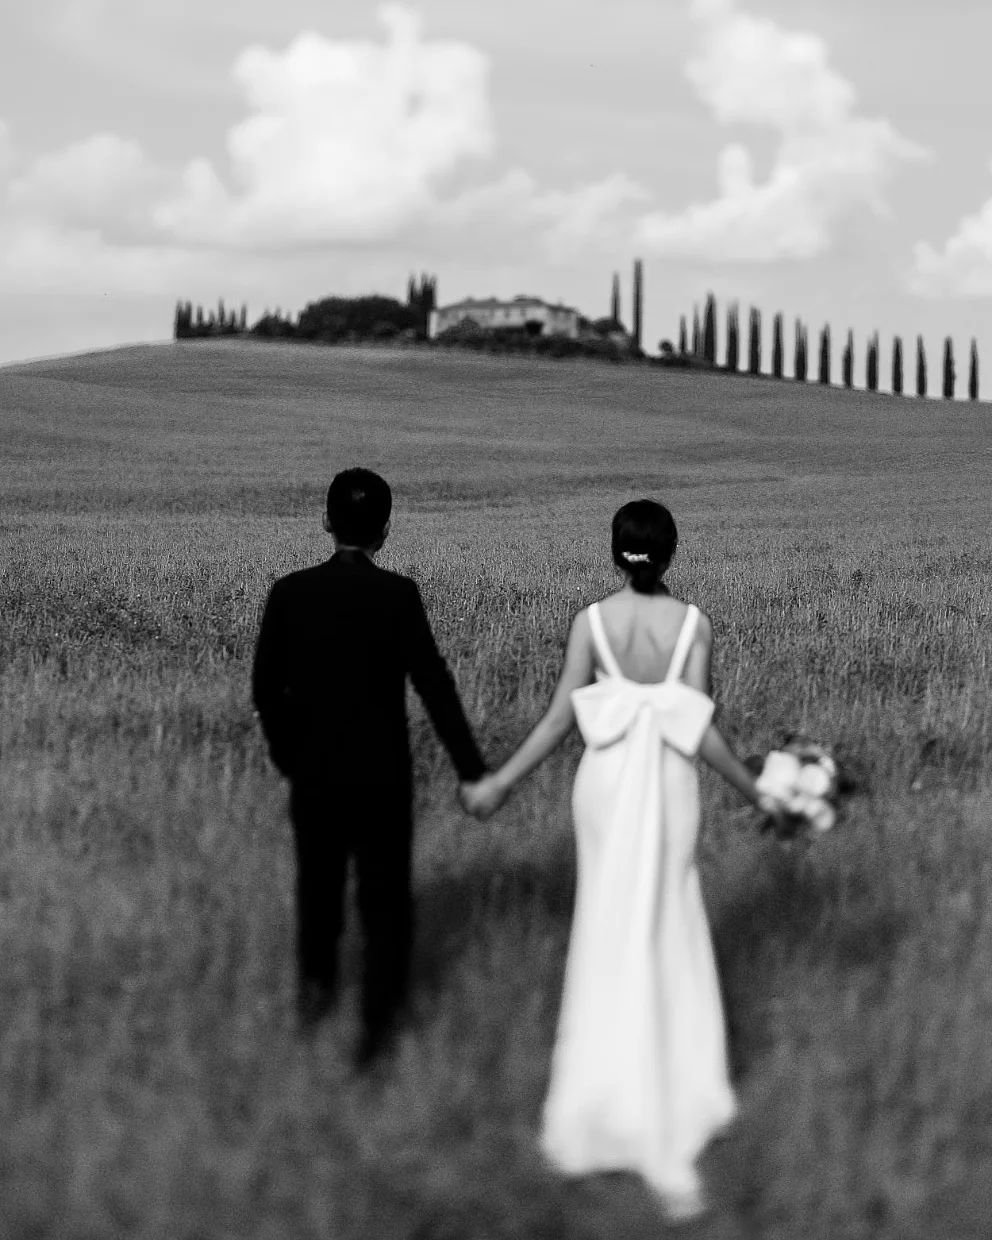 Dreamlike from Tuscany🌾

.
.
.
.
.
.
.
.
.
.
.
.
.
.
.
.
.
.
.
.
.
.
.
#tuscany
#tuscanyelopement
#tuscanyweddingphotographer
#sienaweddingphotographer #pugliaweddingphotographer #lakegardaphotographer #florencephotographer
#florenceweddingphotograp